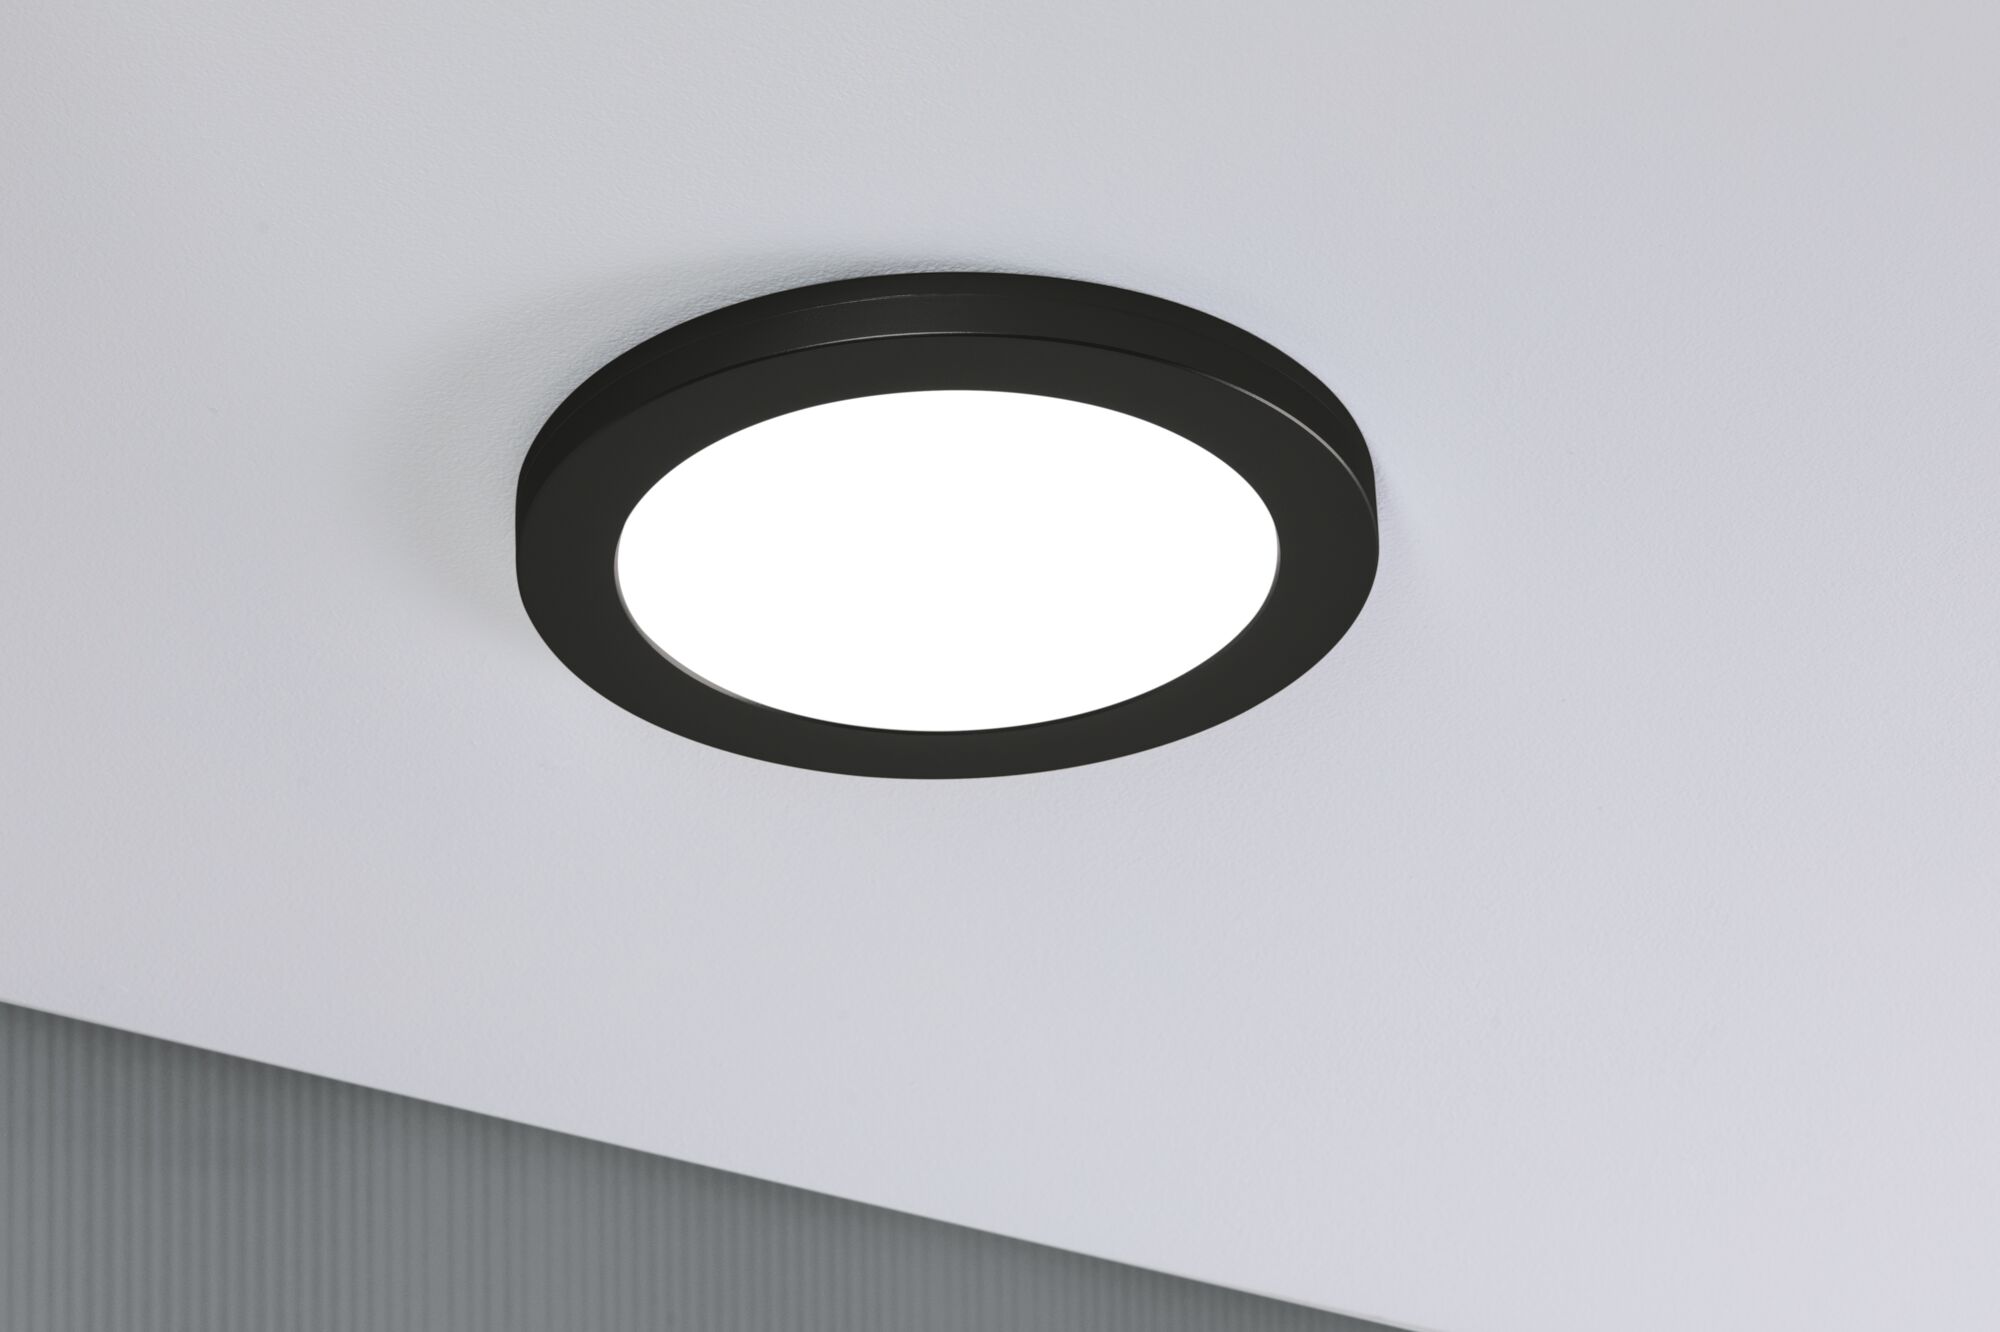 Paulmann 93097 LED Einbaupanel 2in1 Cover-it rund 225mm neutralweiß Schwarz